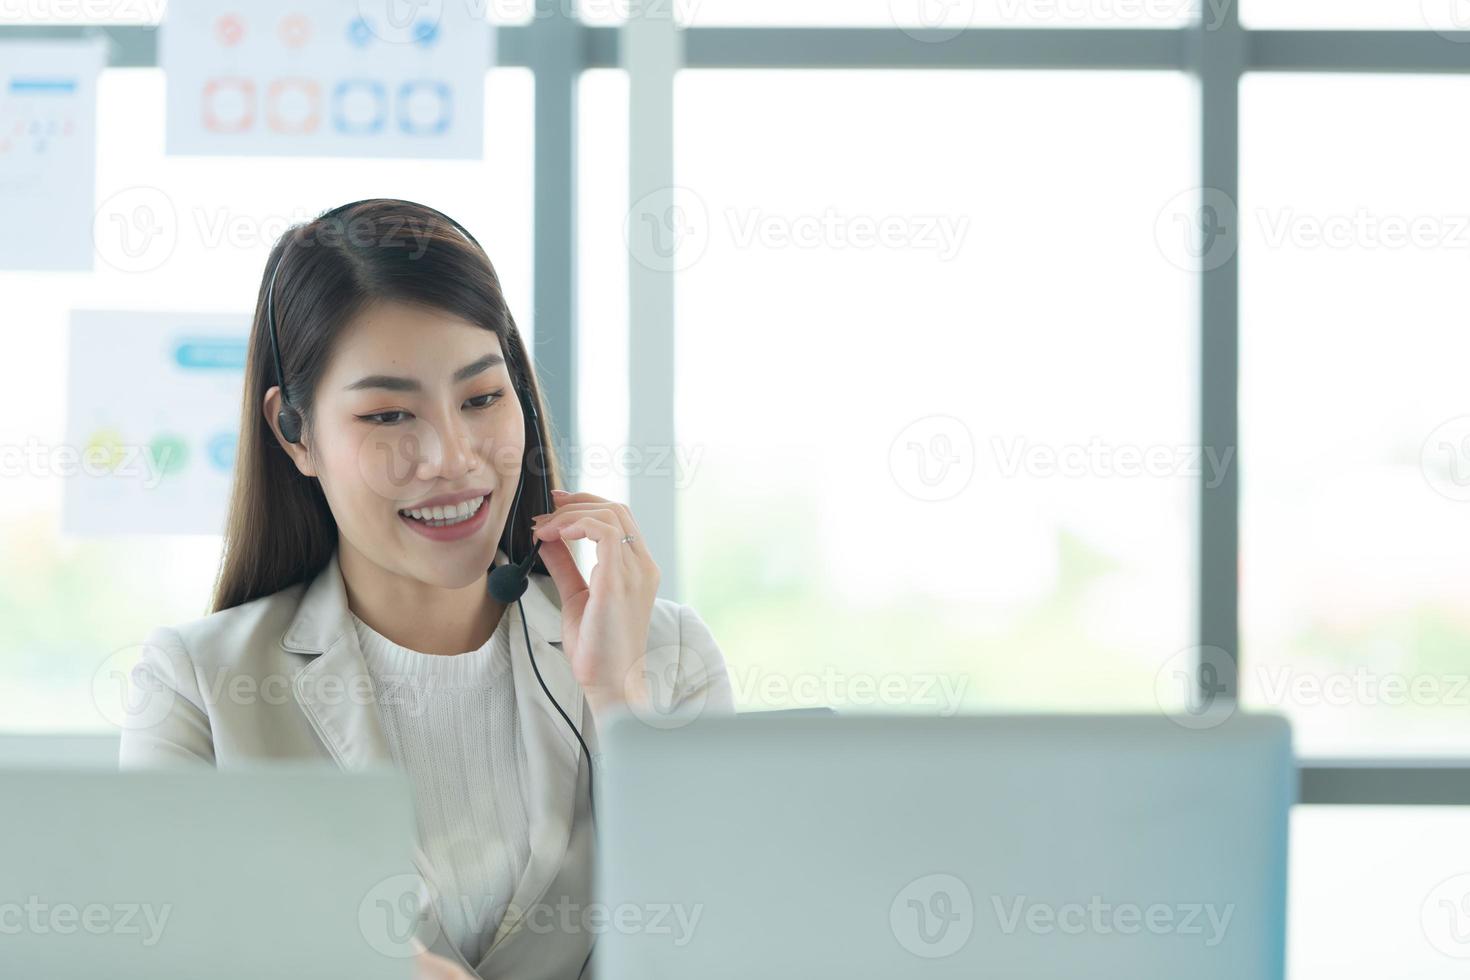 junge asiatische frau, die in einem callcenter arbeitet und sich über informationen zu aktieninvestitionen berät, wenn kunden um beratung bitten foto